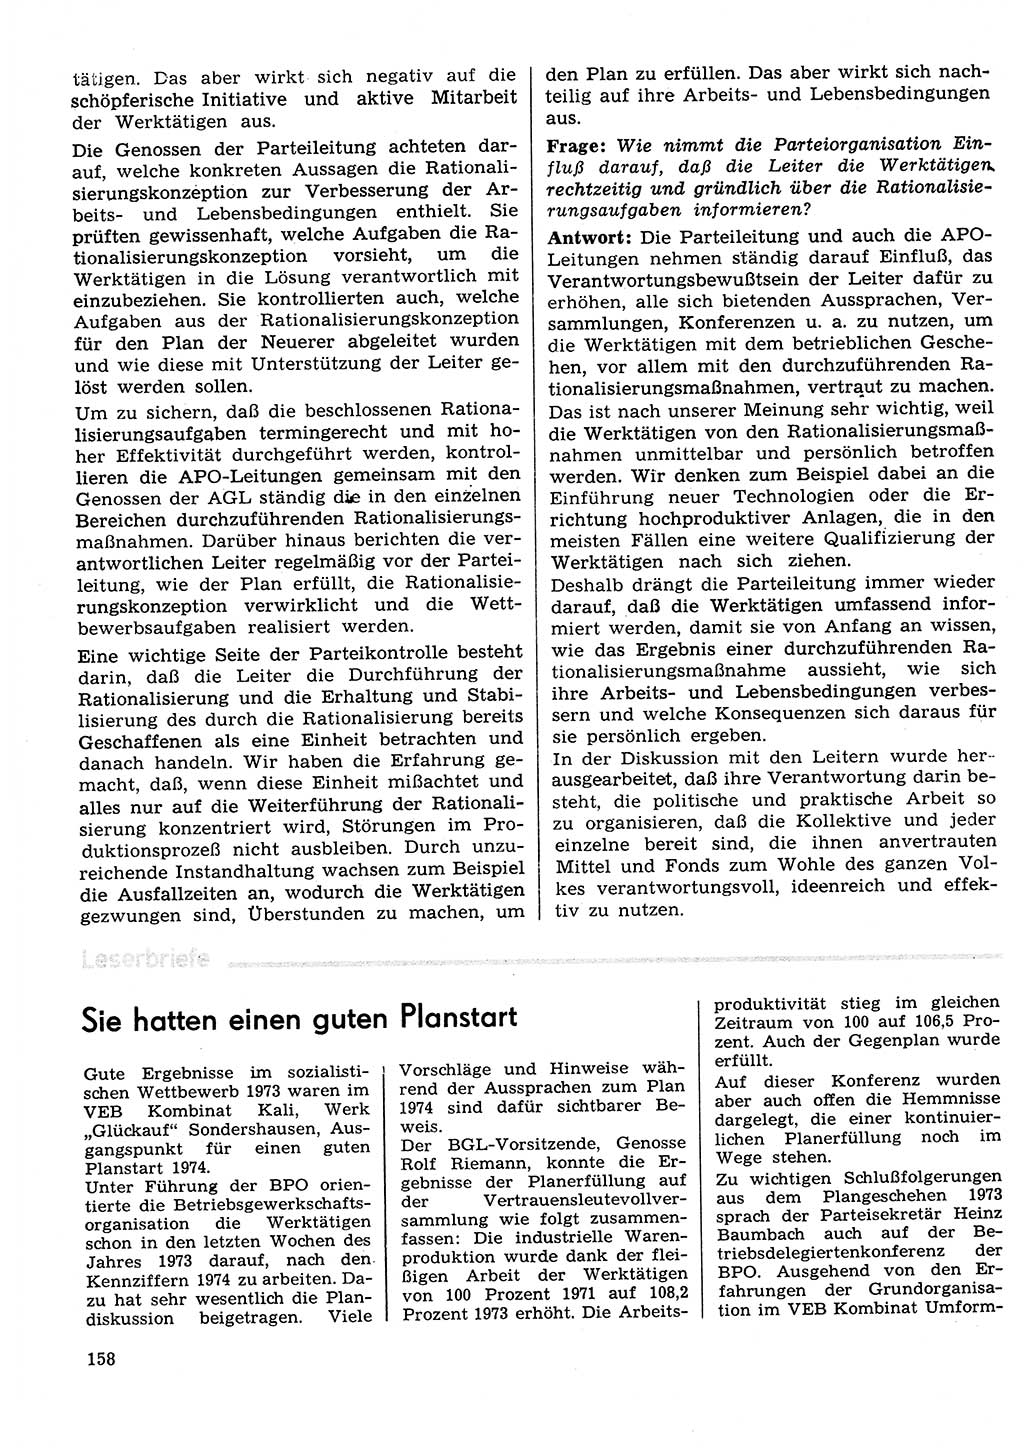 Neuer Weg (NW), Organ des Zentralkomitees (ZK) der SED (Sozialistische Einheitspartei Deutschlands) für Fragen des Parteilebens, 29. Jahrgang [Deutsche Demokratische Republik (DDR)] 1974, Seite 158 (NW ZK SED DDR 1974, S. 158)